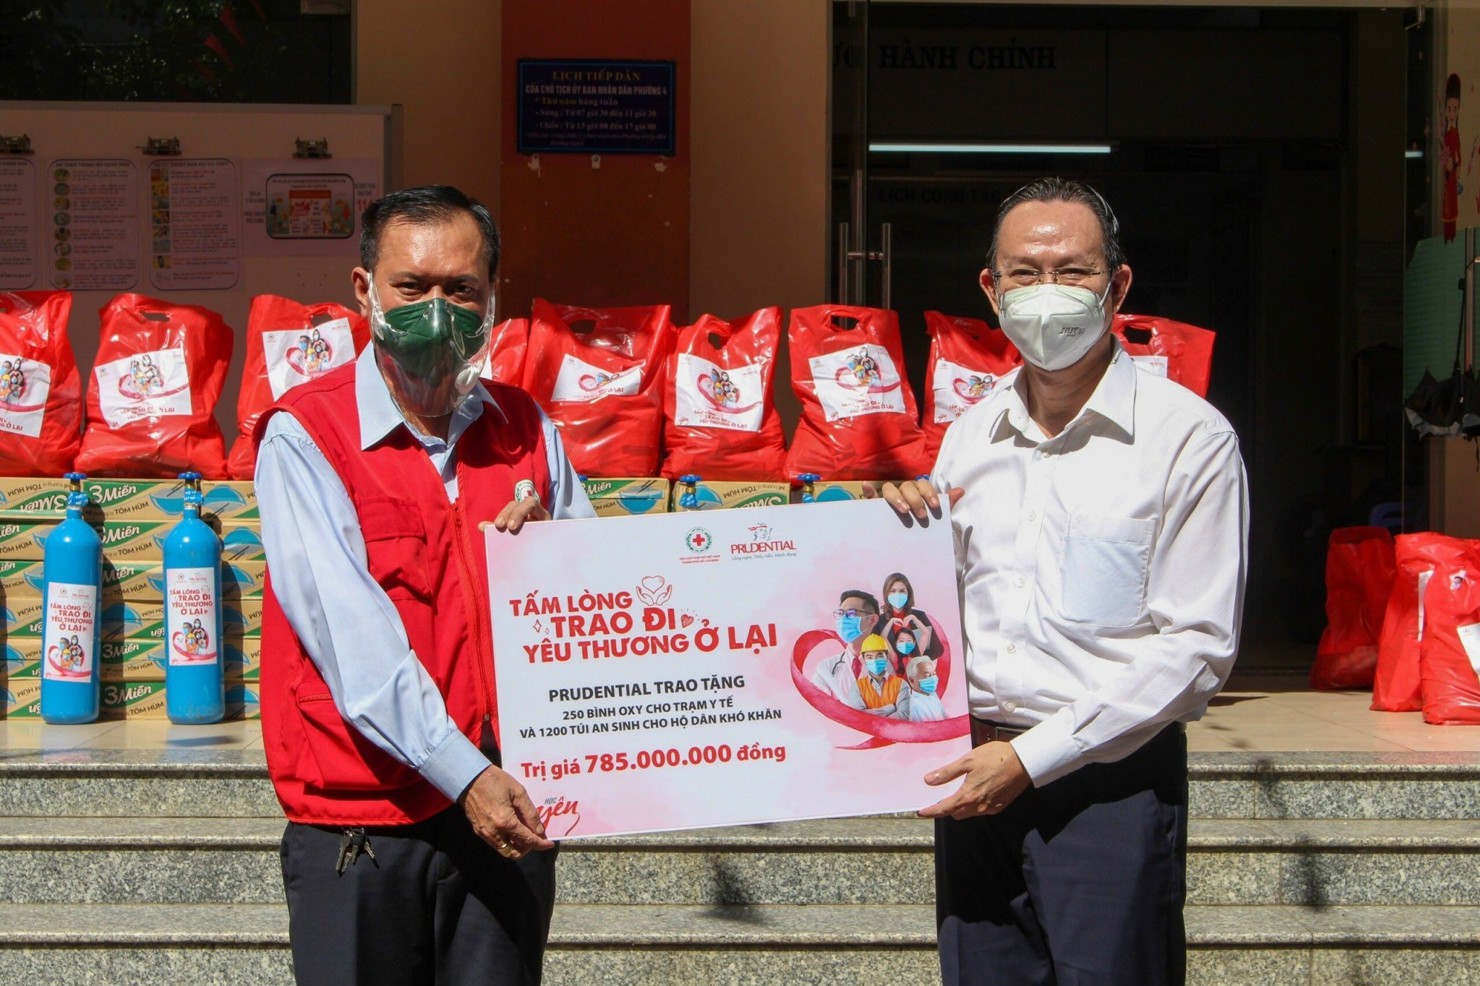 Prudential trao tặng 250 bình oxy và 1.200 túi an sinh cho các hộ dân khó khăn tại 6 tỉnh, thành phố phía Nam (ngày 22/9/2021).